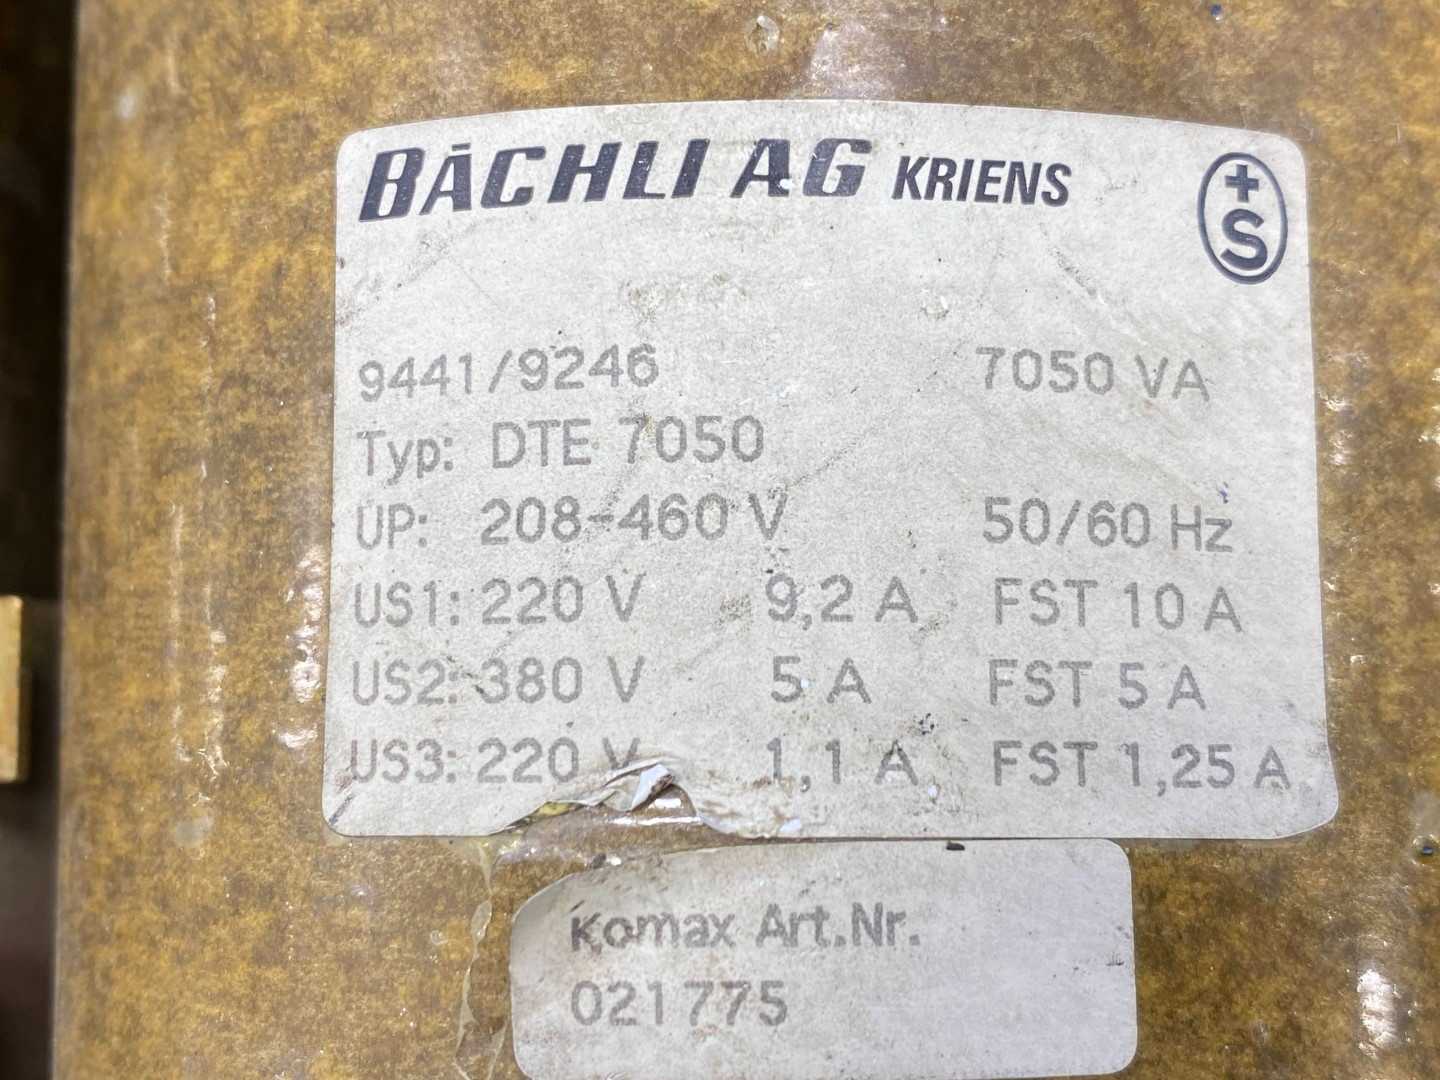 7050VA BACHLI AG  KRIENS DTE-7050 Bachli DRE-7050 Transformer 208/460V